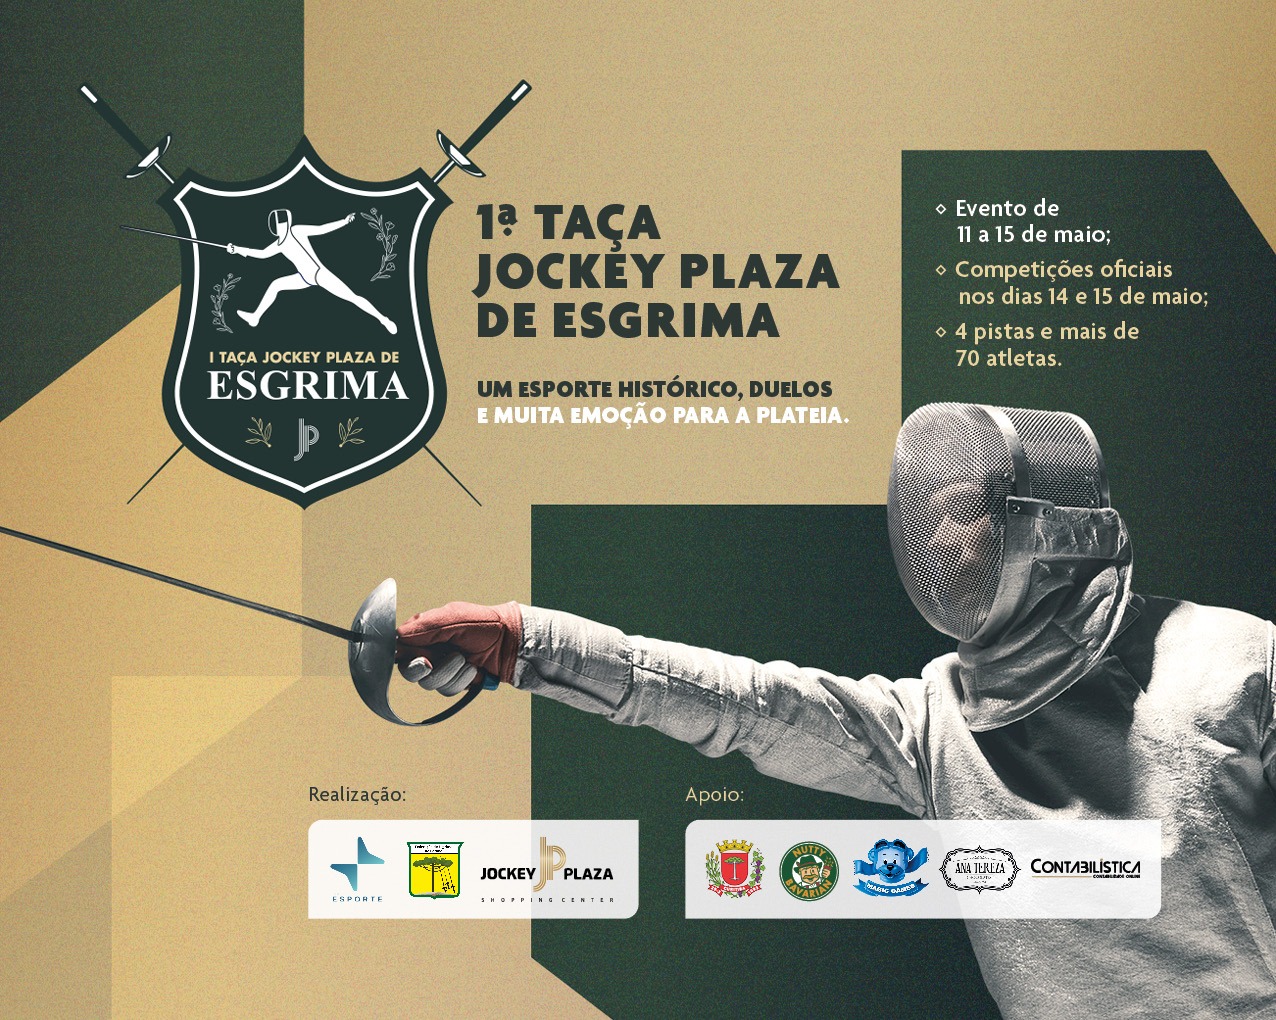 1ª Taça Jockey Plaza de Esgrima